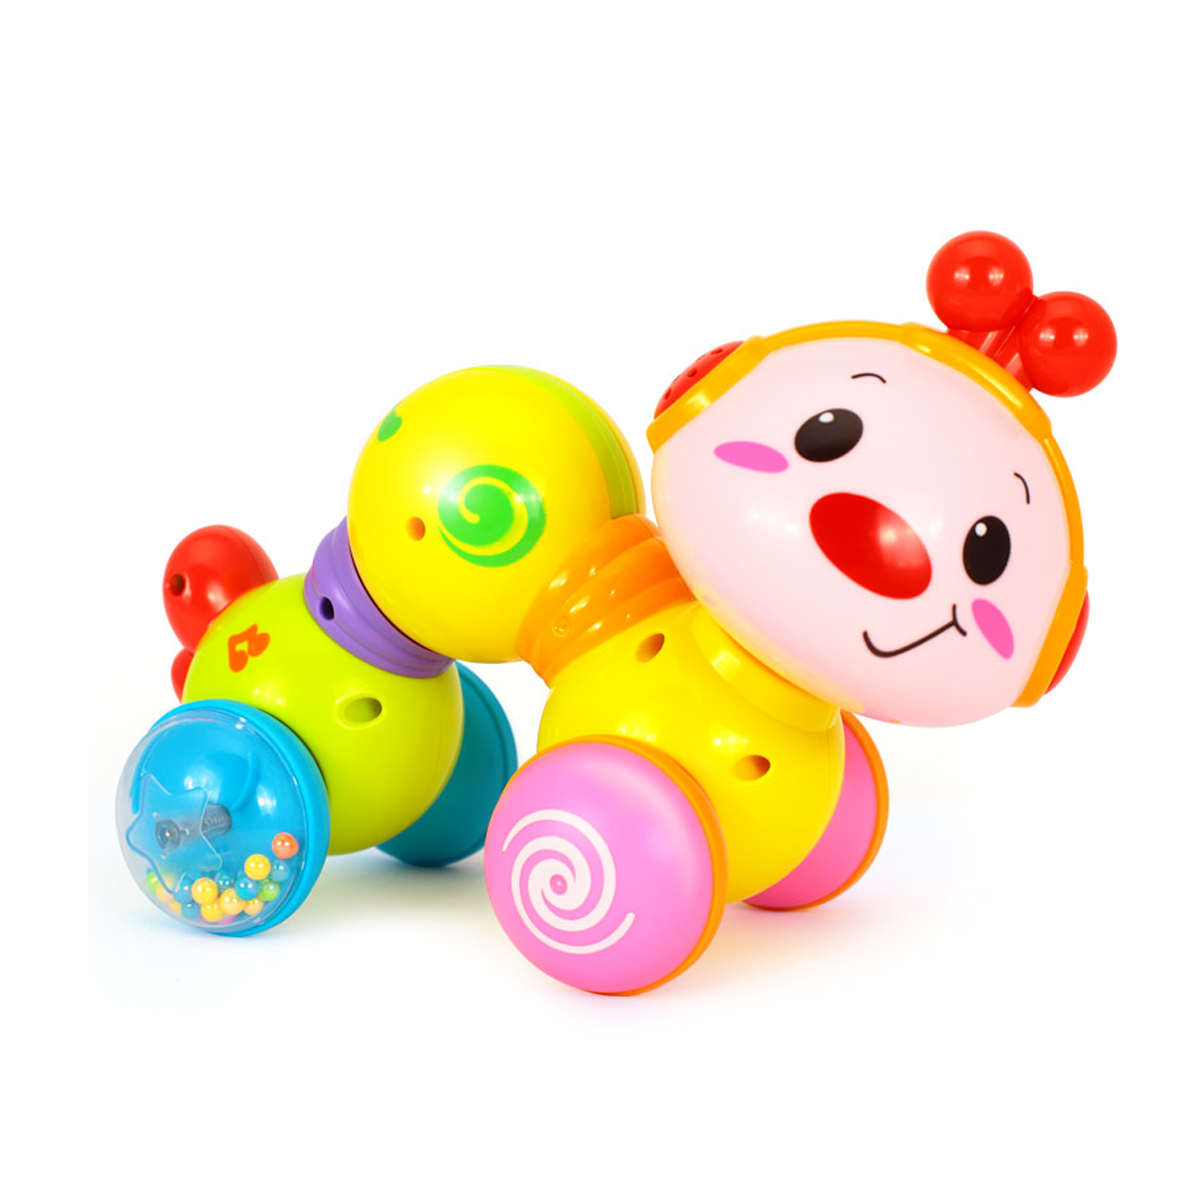 זחל שמח הולה טויס – Hola Toys Happy Wiggle Worm